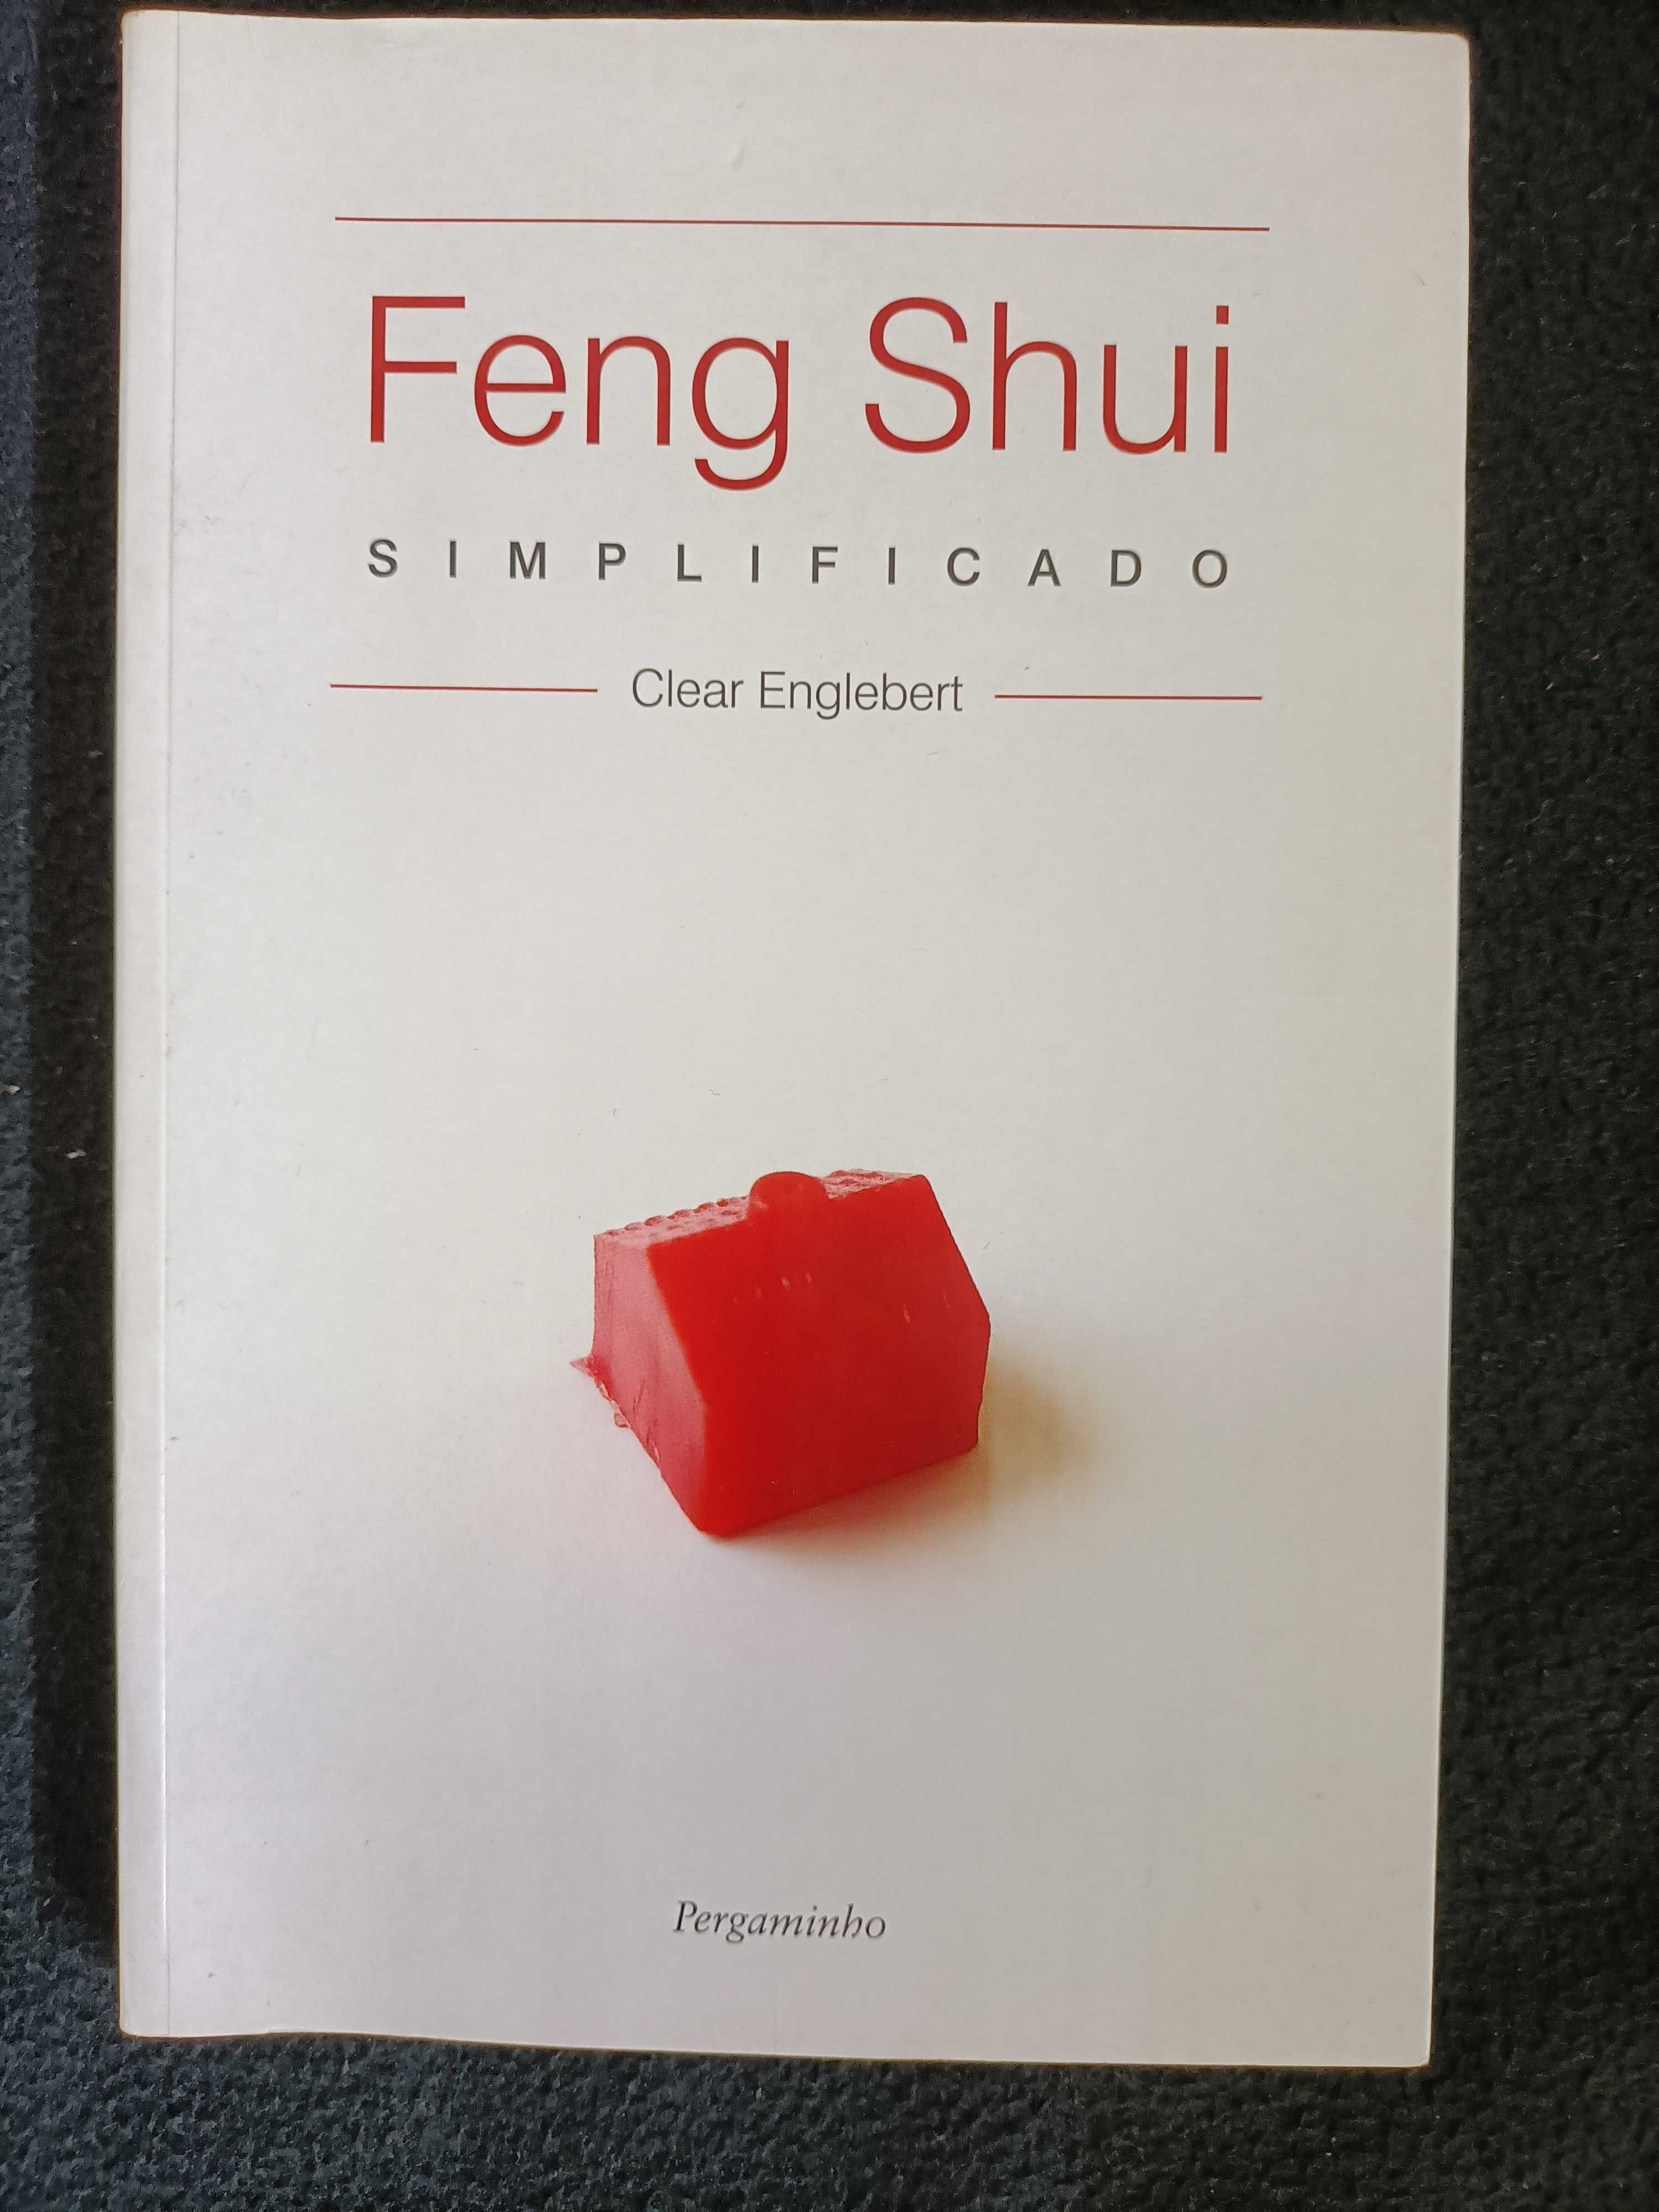 Feng Shui simplificado - Clear Englebert - portes incluídos